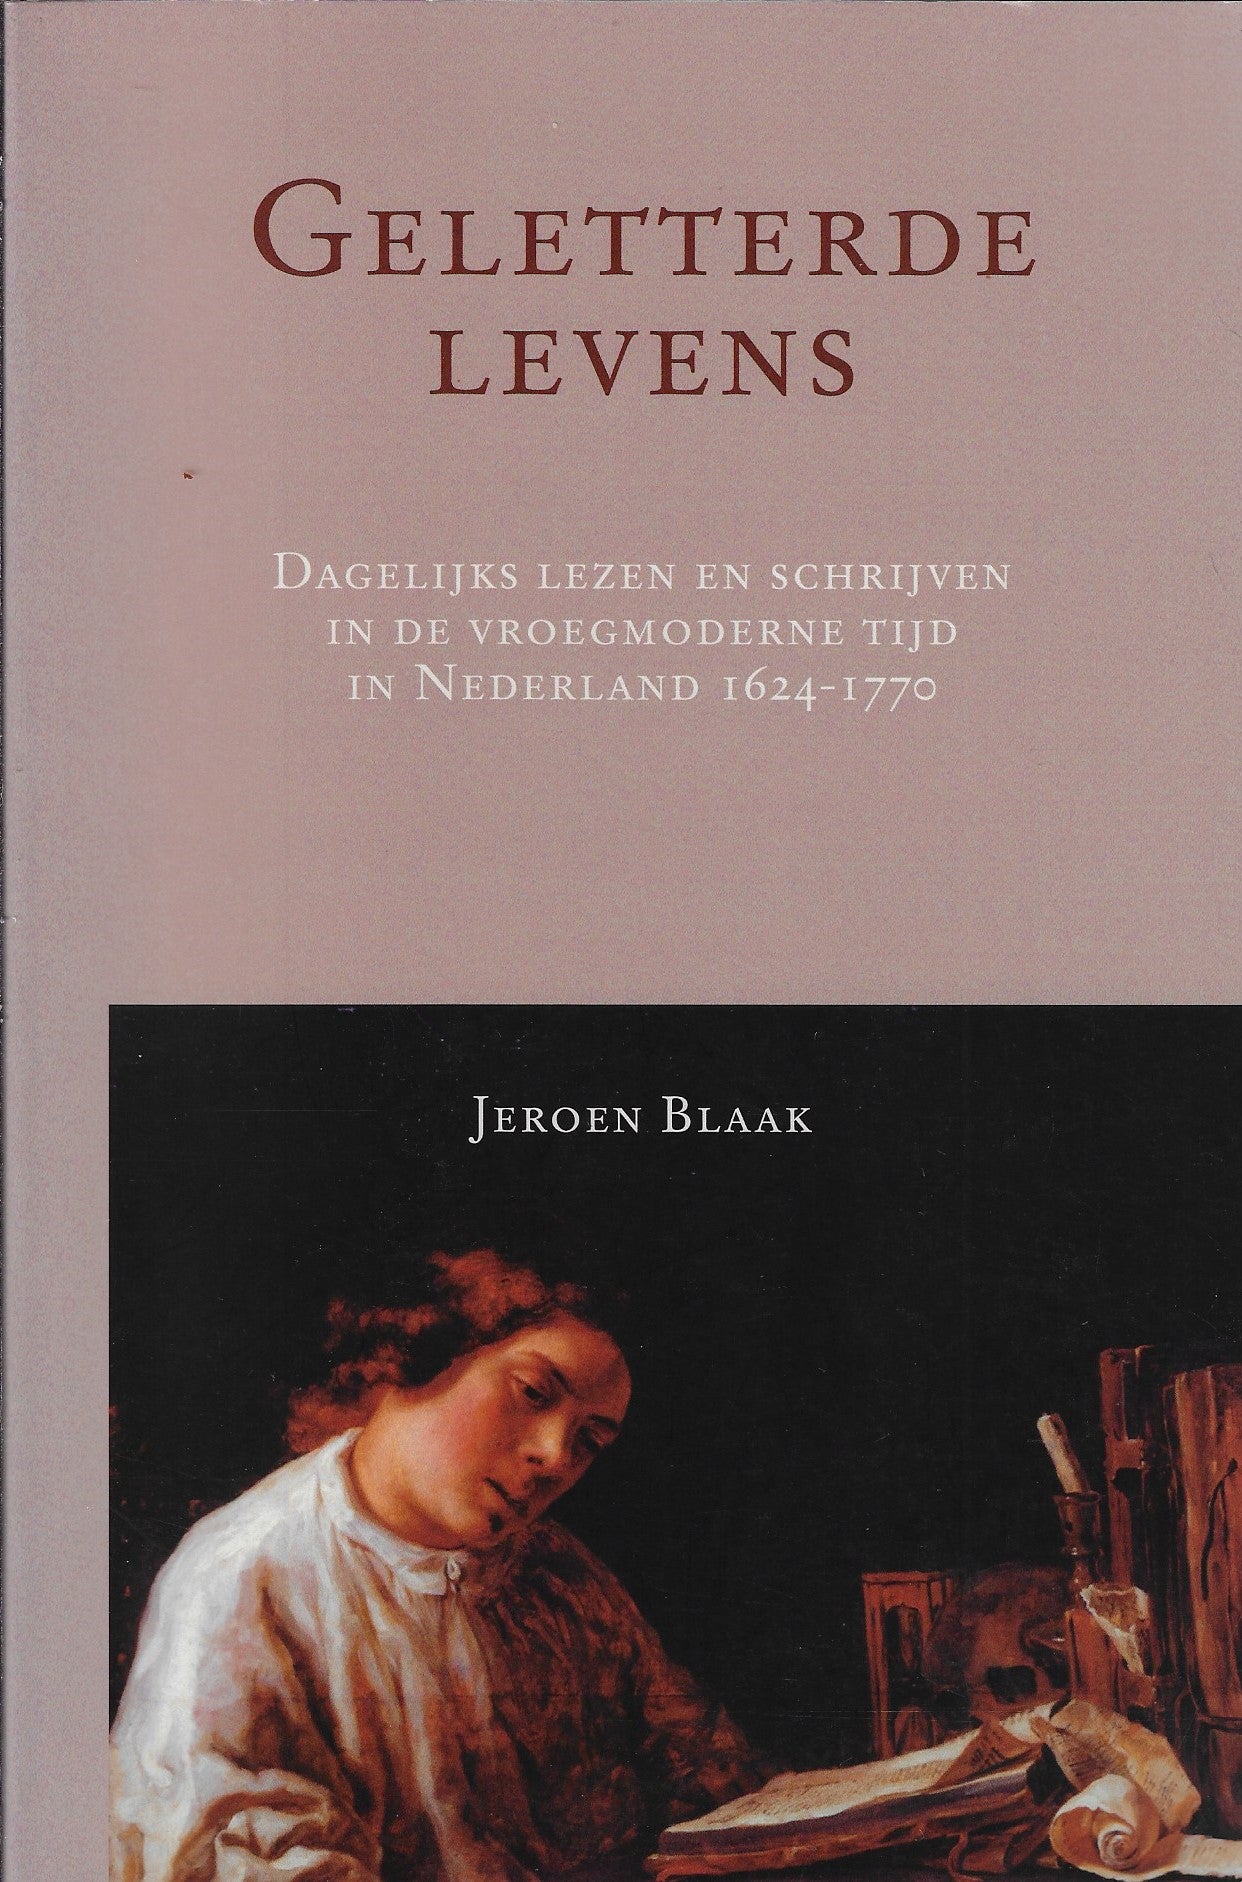 Geletterde levens / dagelijks lezen en schrijven in de vroegmoderne tijd in Nederland 1624-1770